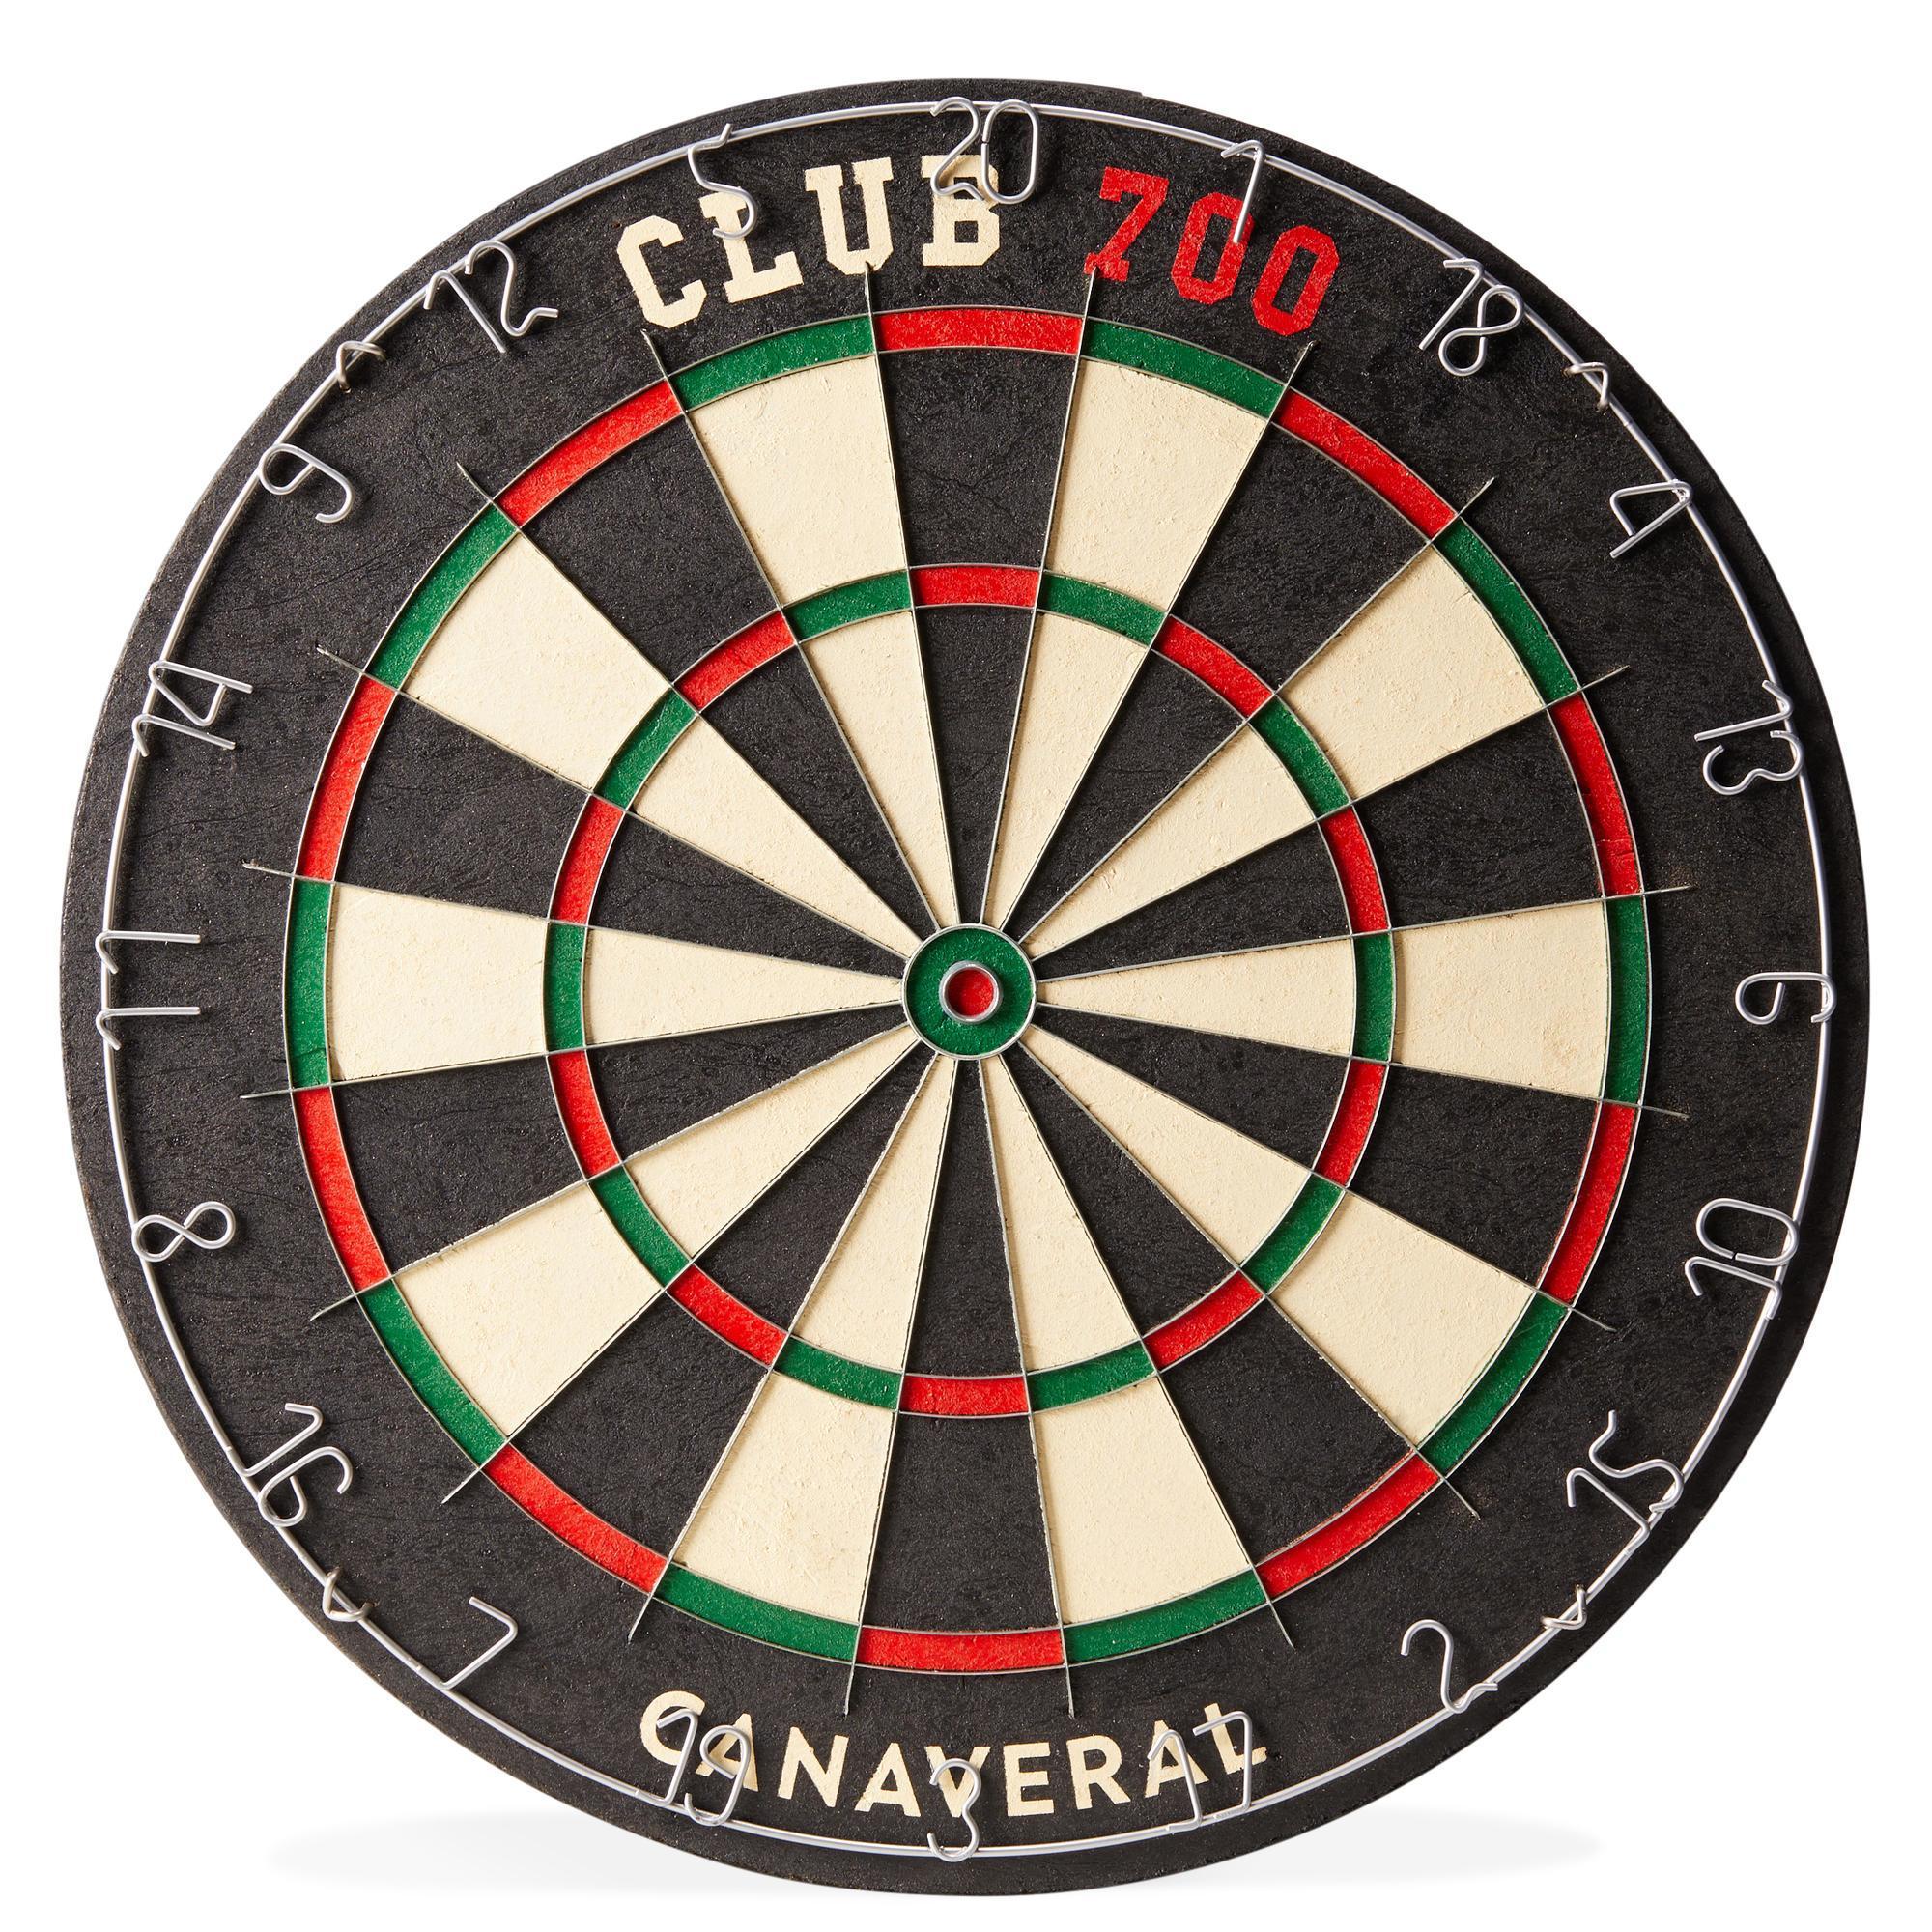 Ţinţă Clasică Darts Club 700 pentru săgeți din oțel 700 imagine noua